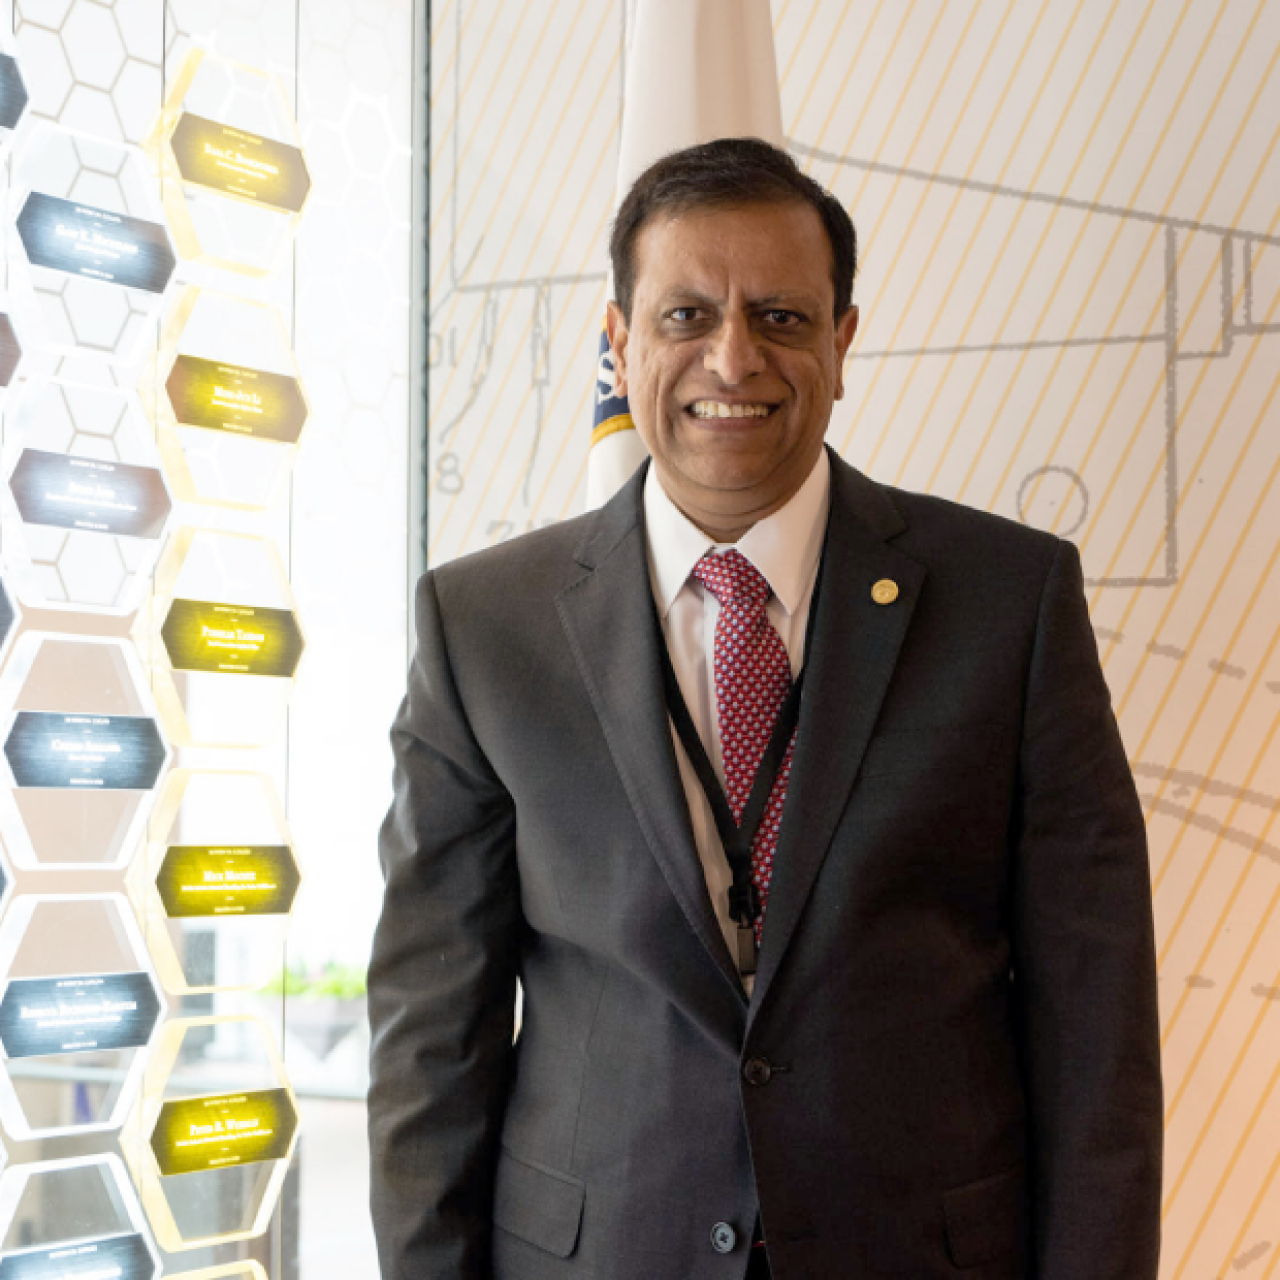 化学工程师普什卡尔·坦顿(Pushkar Tandon)帮助康宁公司开发了可弯曲光纤。